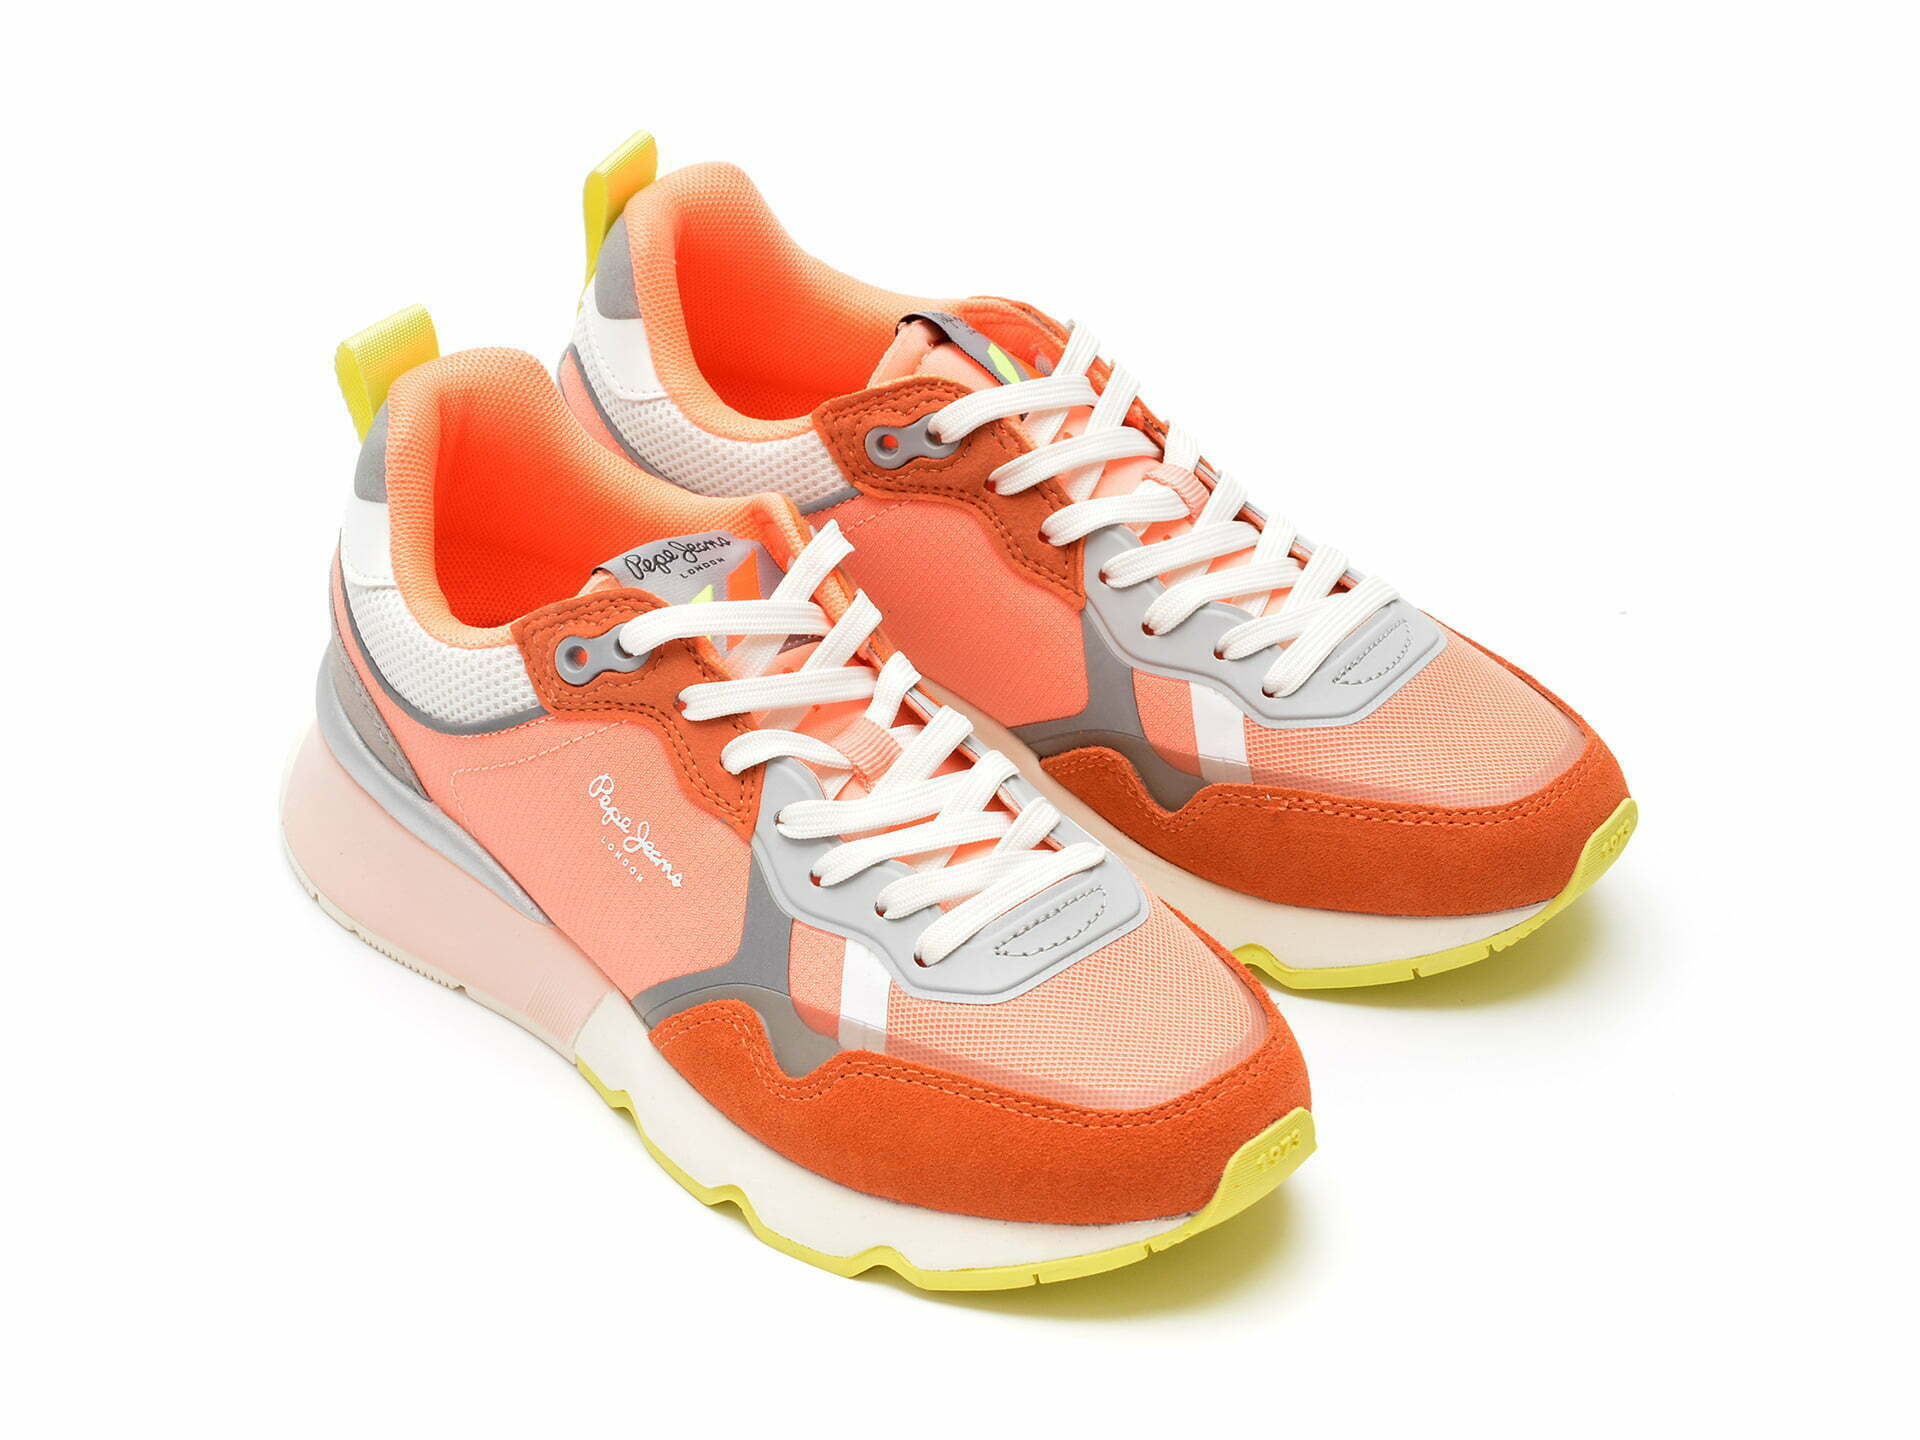 Comandă Încălțăminte Damă, la Reducere  Pantofi sport PEPE JEANS portocalii, LS31348, din material textil si piele naturala Branduri de top ✓